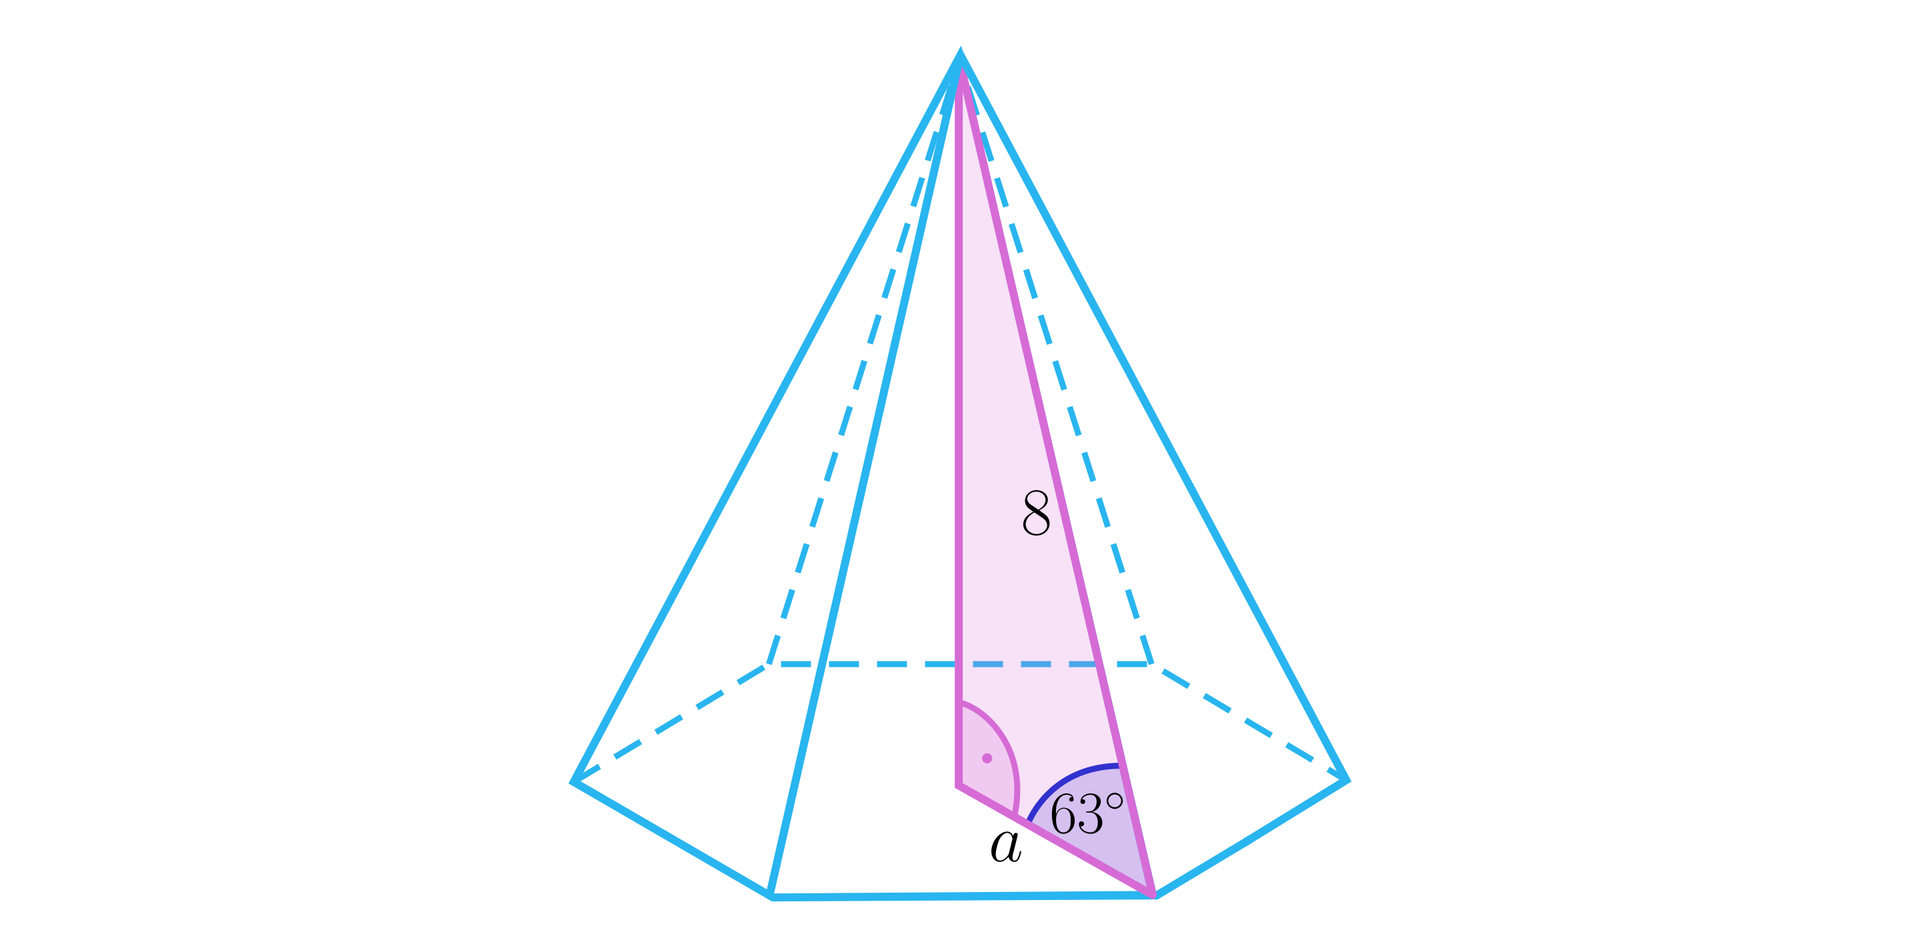 Ilustracja przedstawia ostrosłup, którego podstawą jest sześciokąt. W ostrosłupie zaznaczono jego wysokość, jest ona pod kątem prostym do podstawy. Krawędź ściany bocznej ma długość osiem. W ostrosłupie zaznaczono trójkąt składający się z wysokości ostrosłupa, wysokości ściany bocznej oraz odcinka łączącego wysokość z krawędzią. Odcinek ten ma długość a. Zaznaczony trójkąt jest trójkątem prostokątnym, a krawędź ściany bocznej jest przeciwprostokątną. Kąt pomiędzy przyprostokątną o długości a i przeciwprostokątną ma 63 stopnie. 